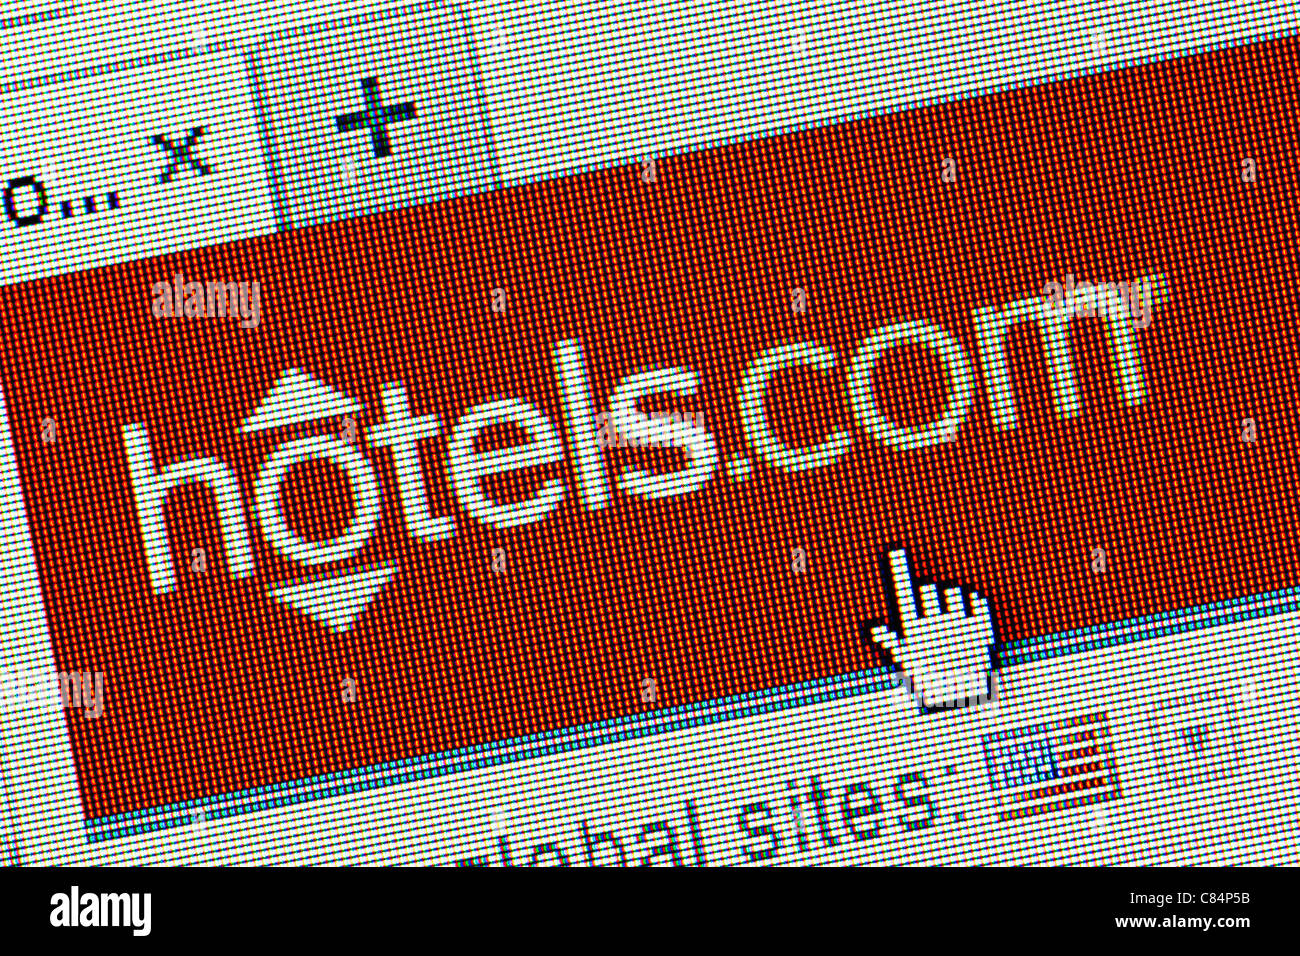 Hotels.com logo and website close up - USA site Stock Photo